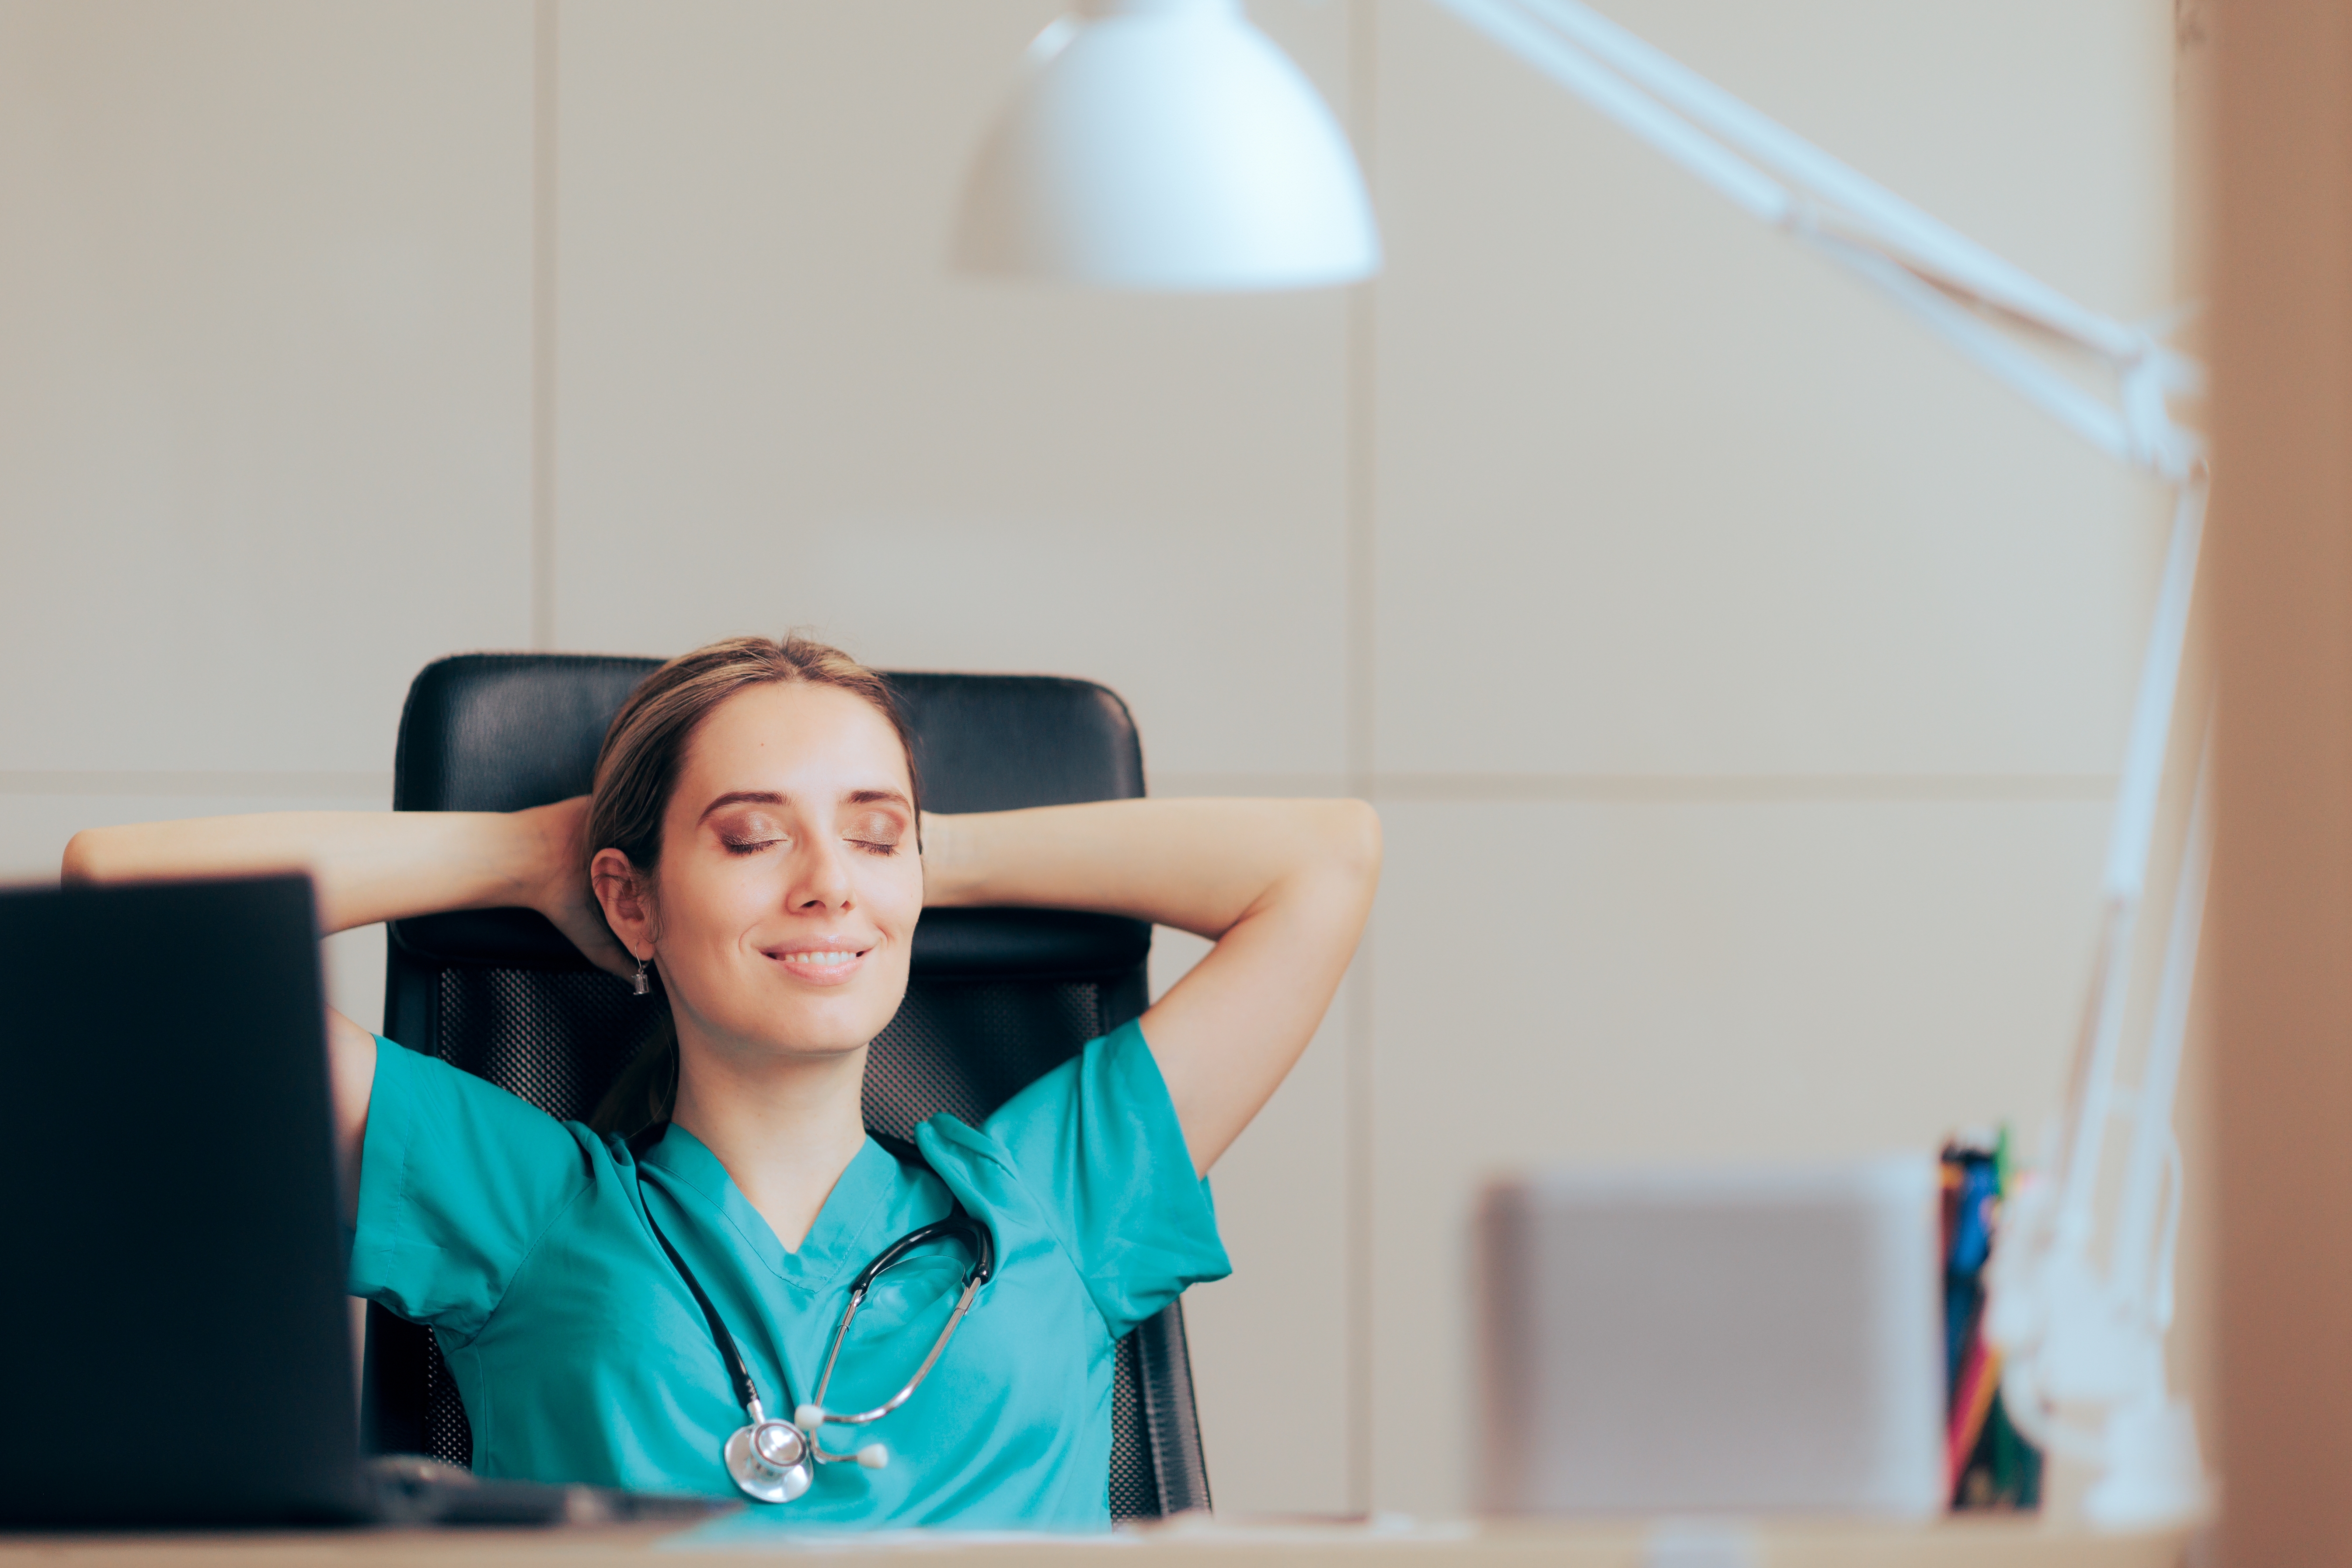 Healthcare employee satisfaction